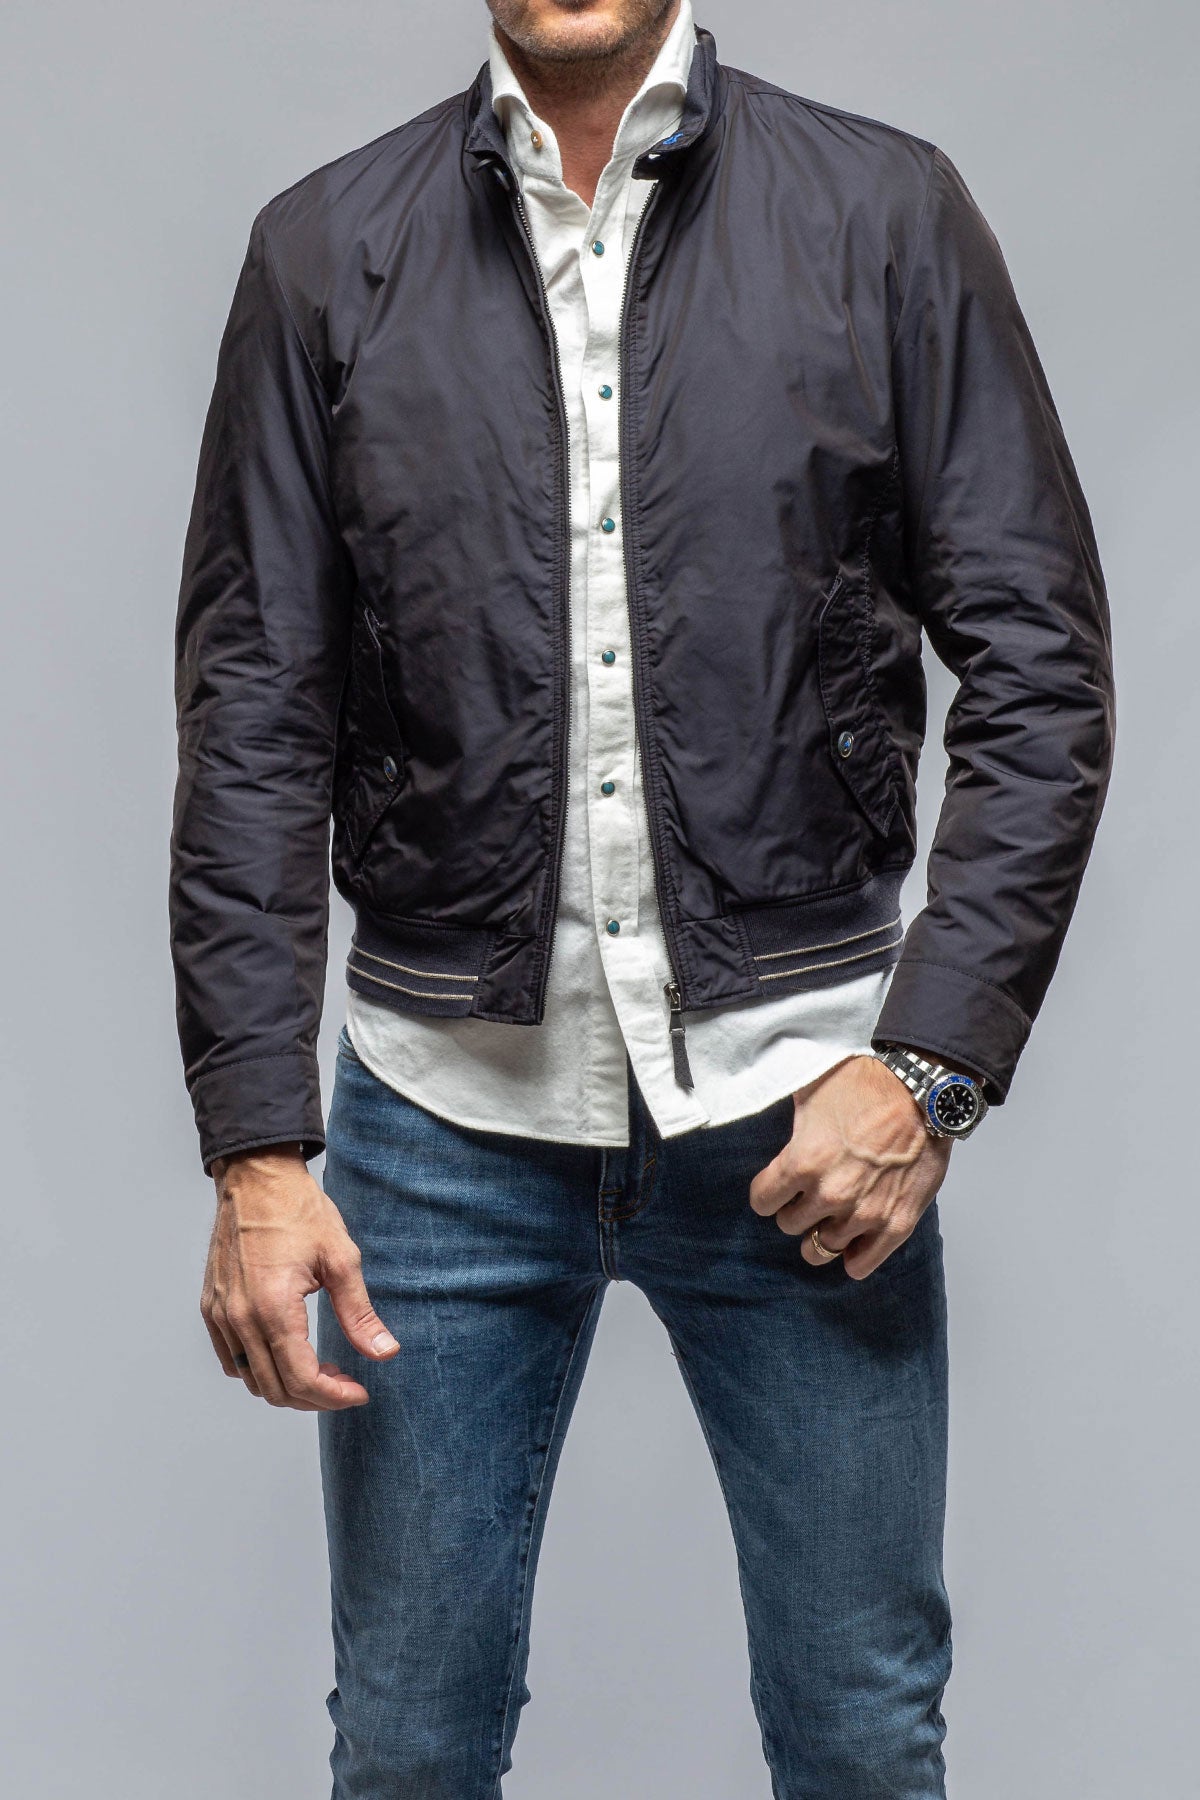 Gimo's Jackets & Coats - 500-1000 - 500-1000